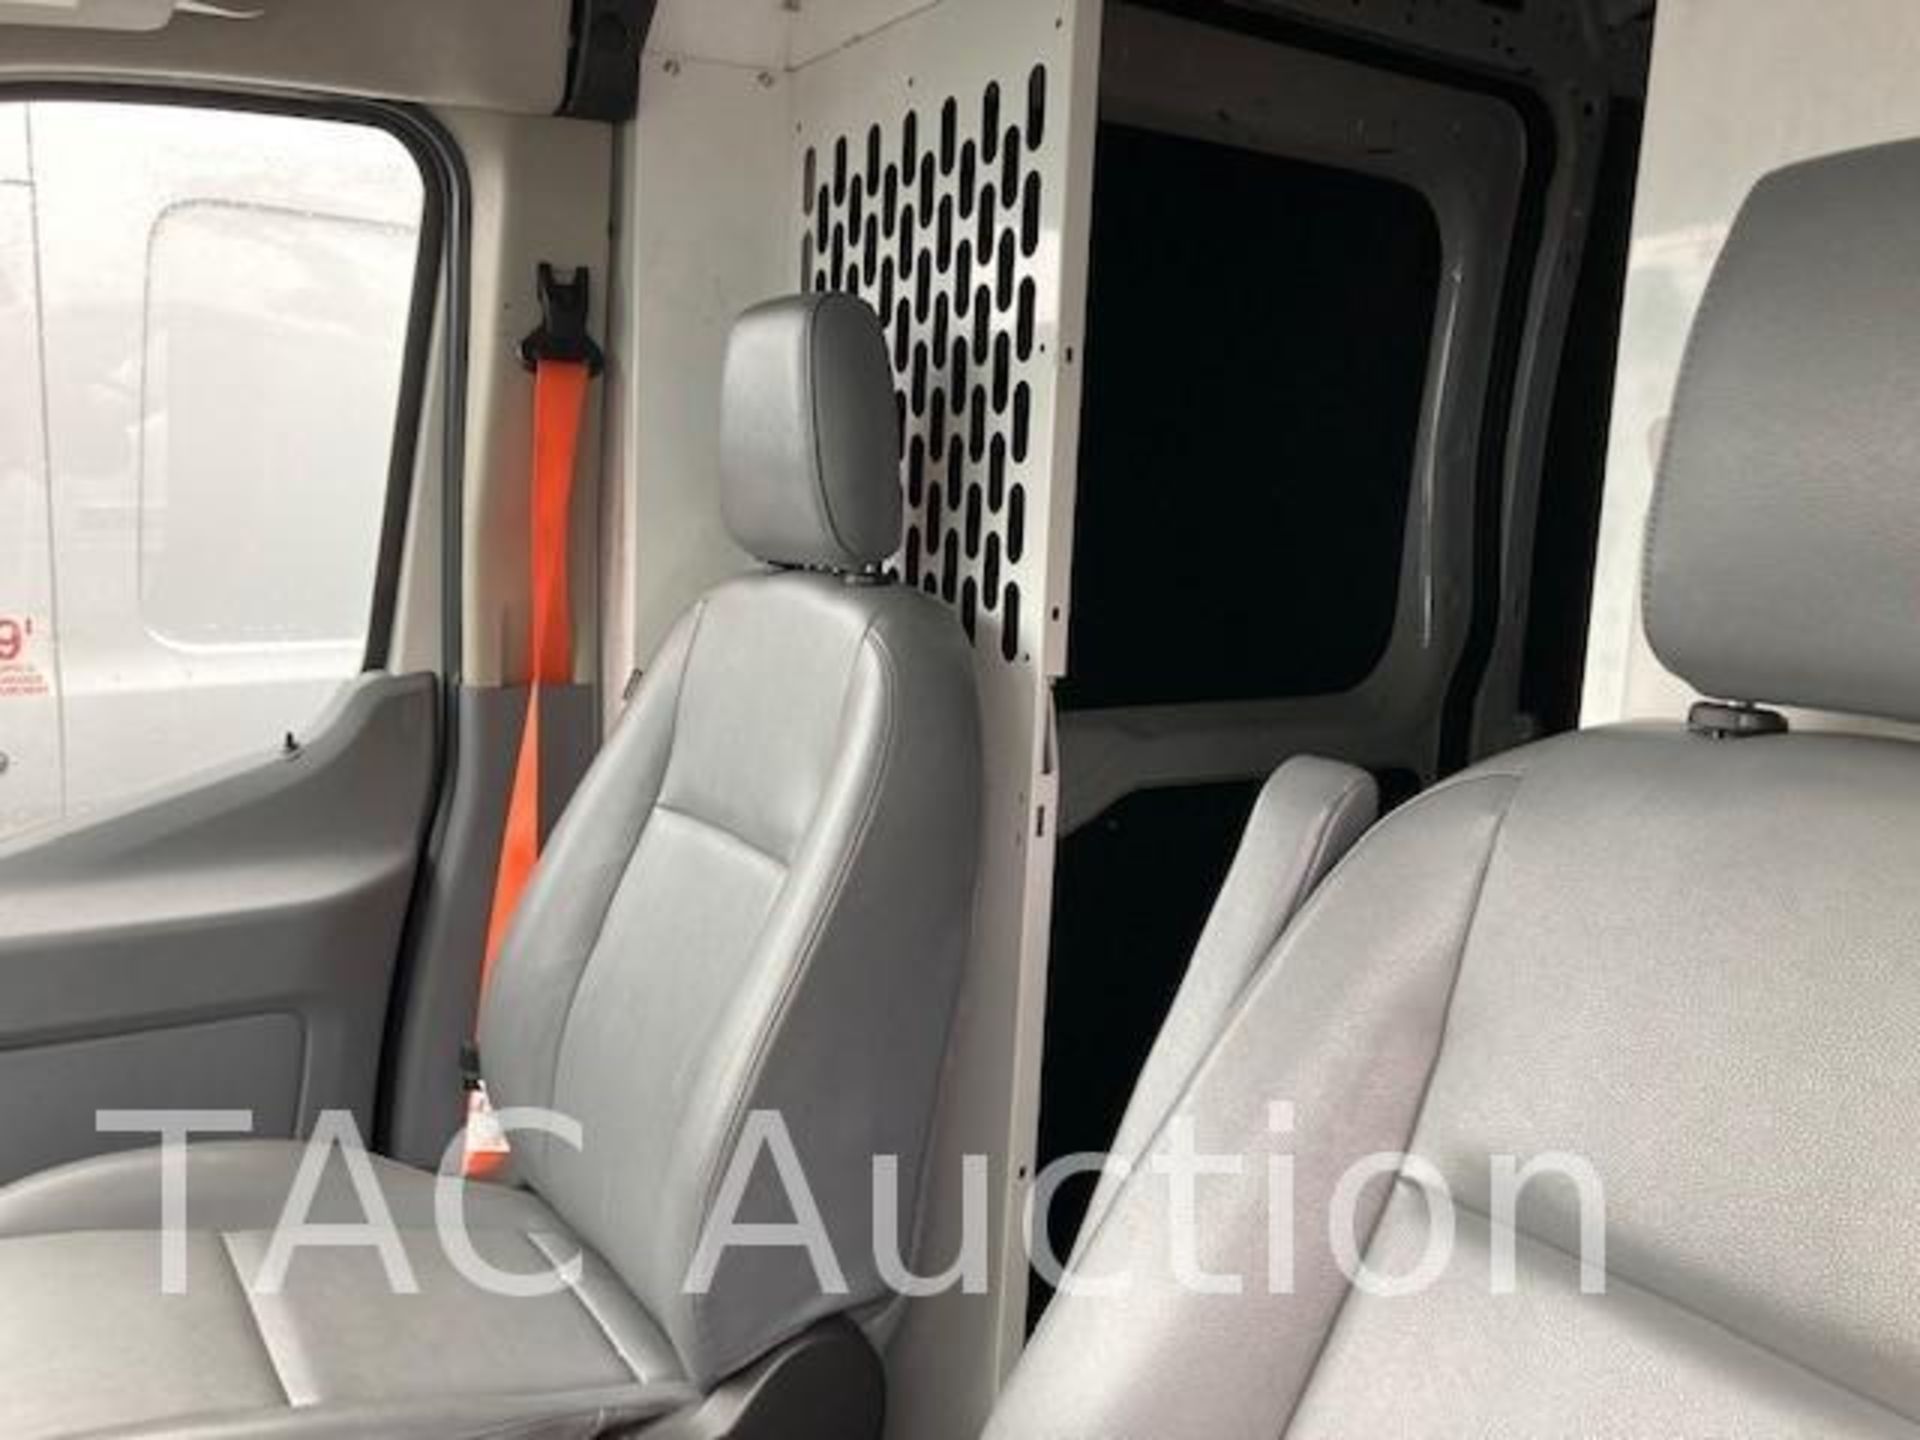 2019 Ford T150 Transit van - Image 17 of 24